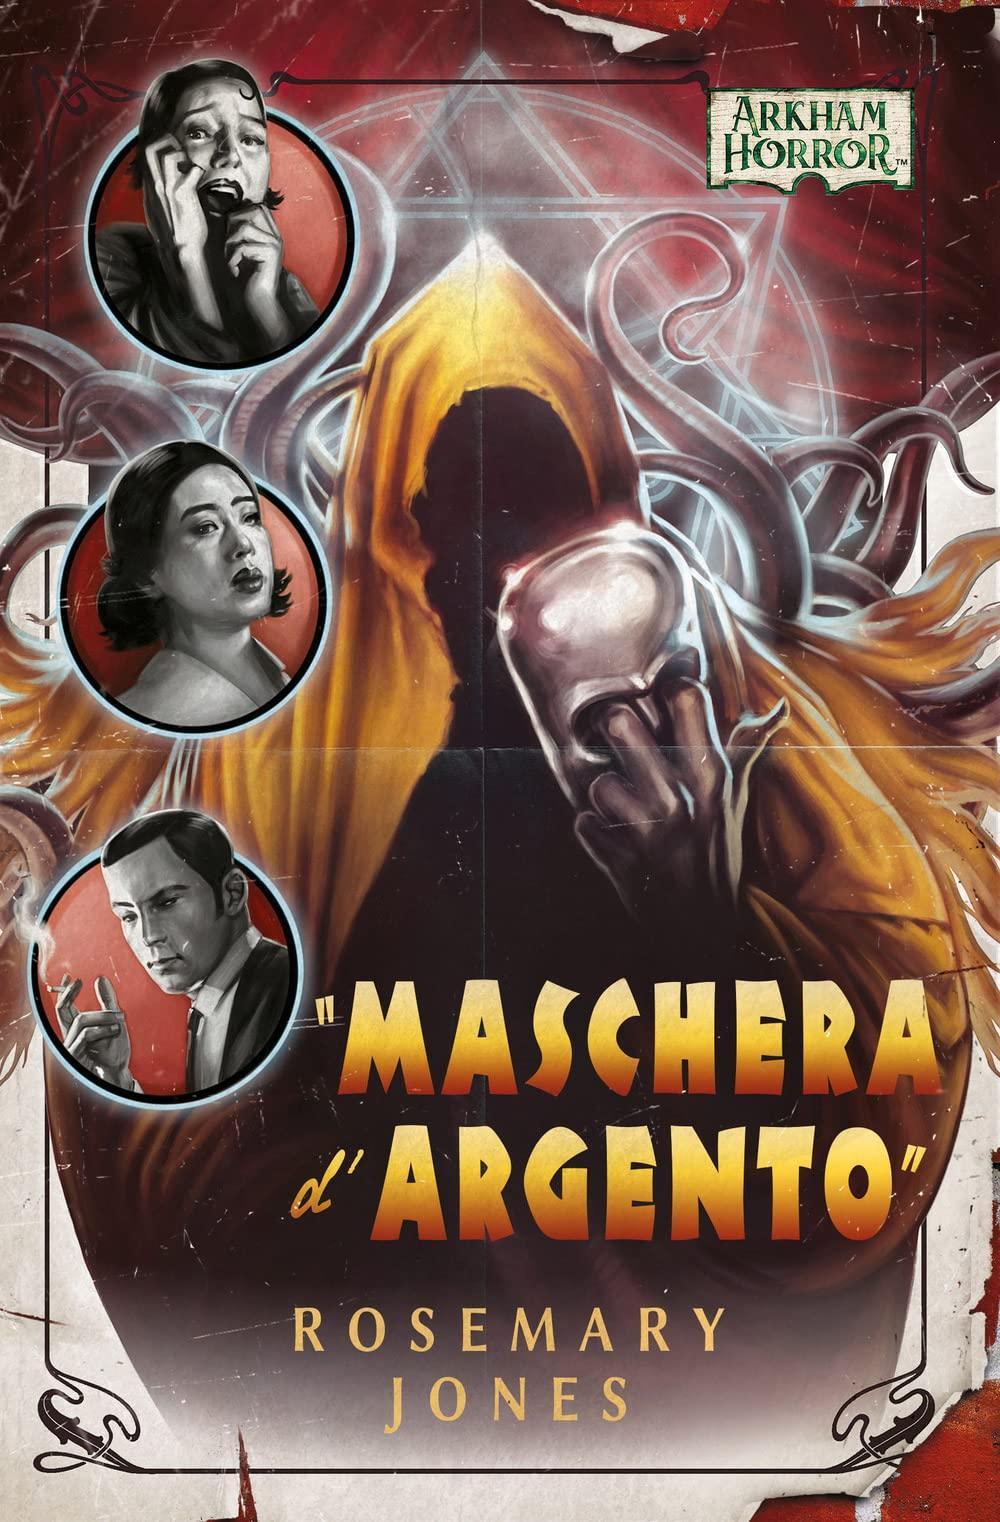 Arkham Horror – “Maschera d’Argento” (EBook, Italian language, Asmodee Italia)